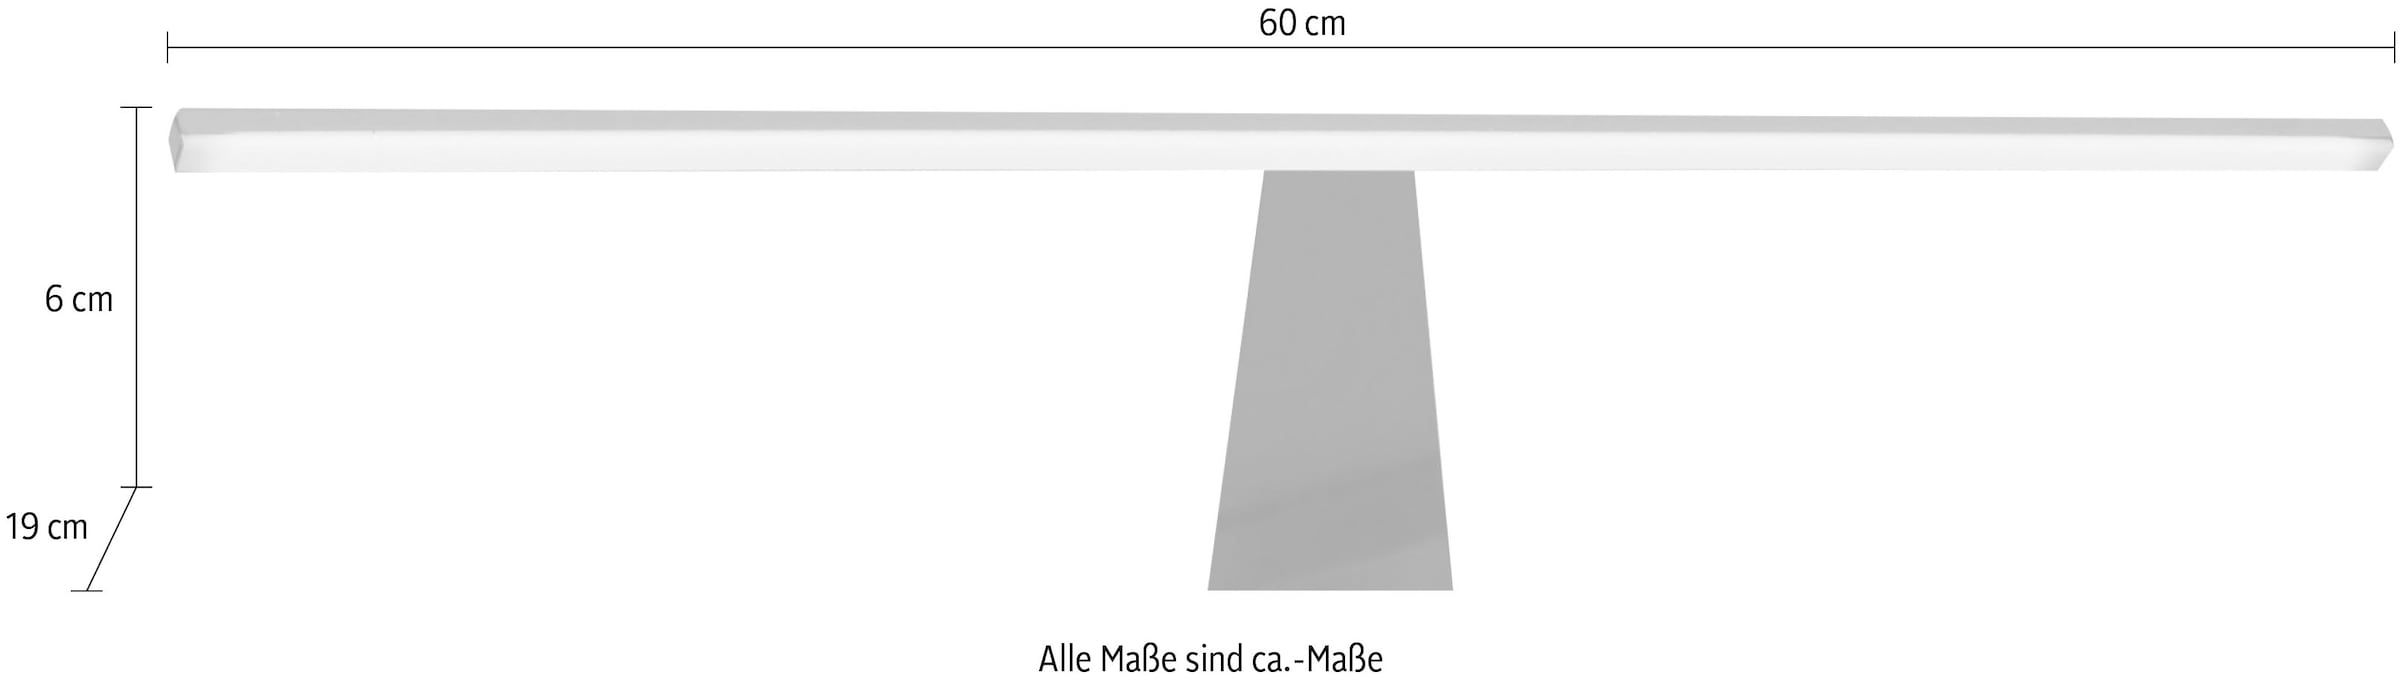 GALLERY M branded by »Imola drei online bestellen Aufbauleuchte Musterring W«, in Set- Varianten